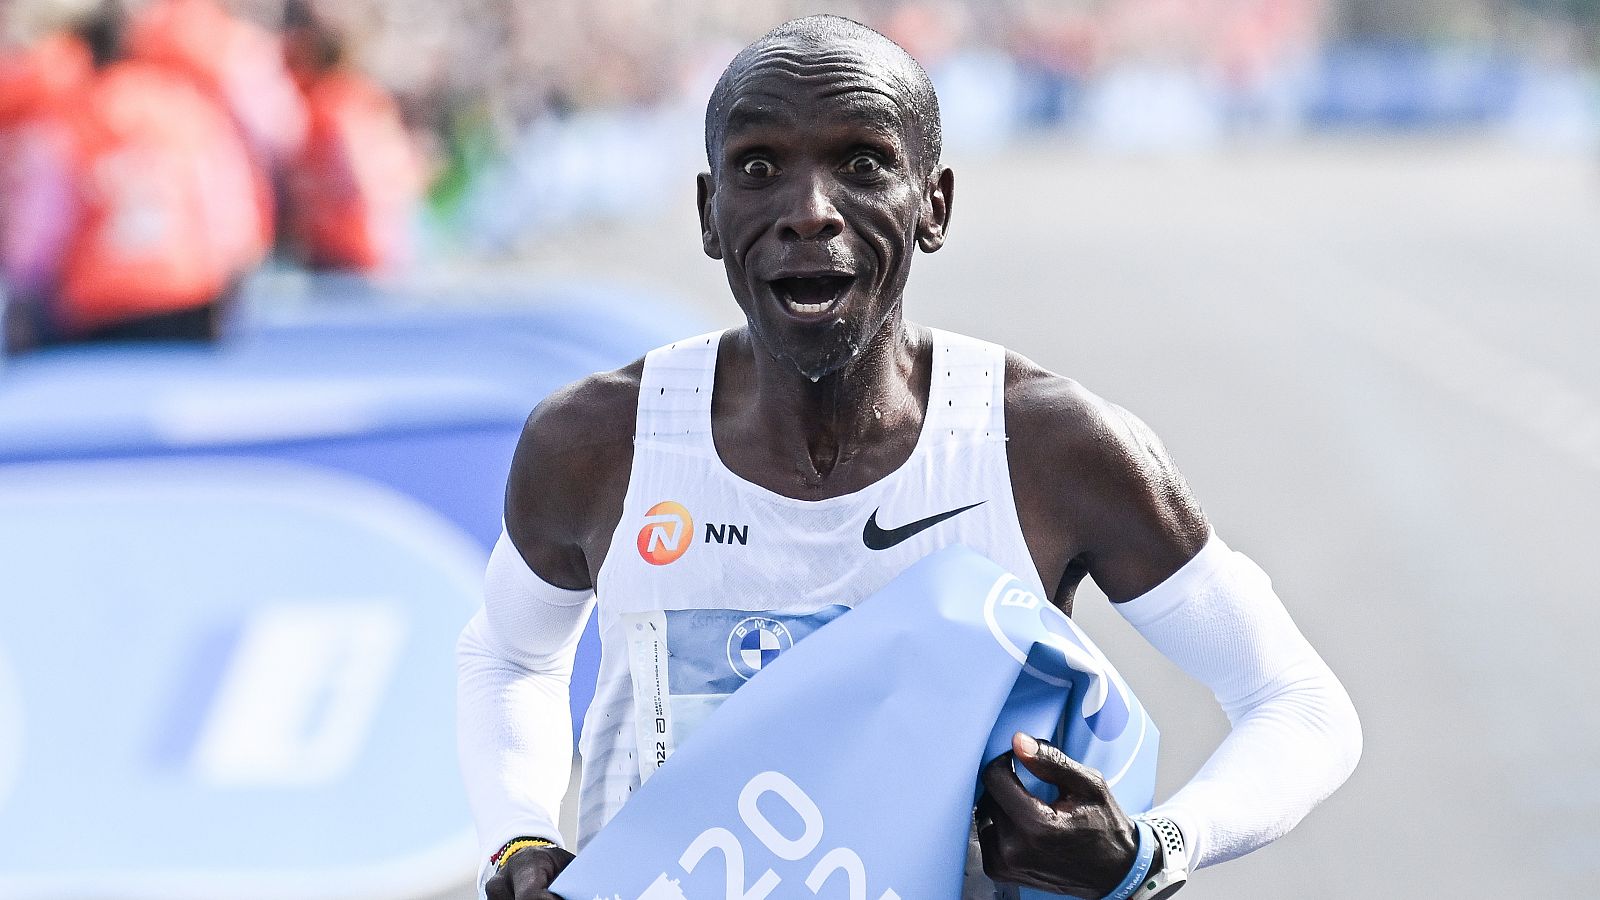 Maratón de Berlín | Eliud Kipchoge bate el récord del mundo